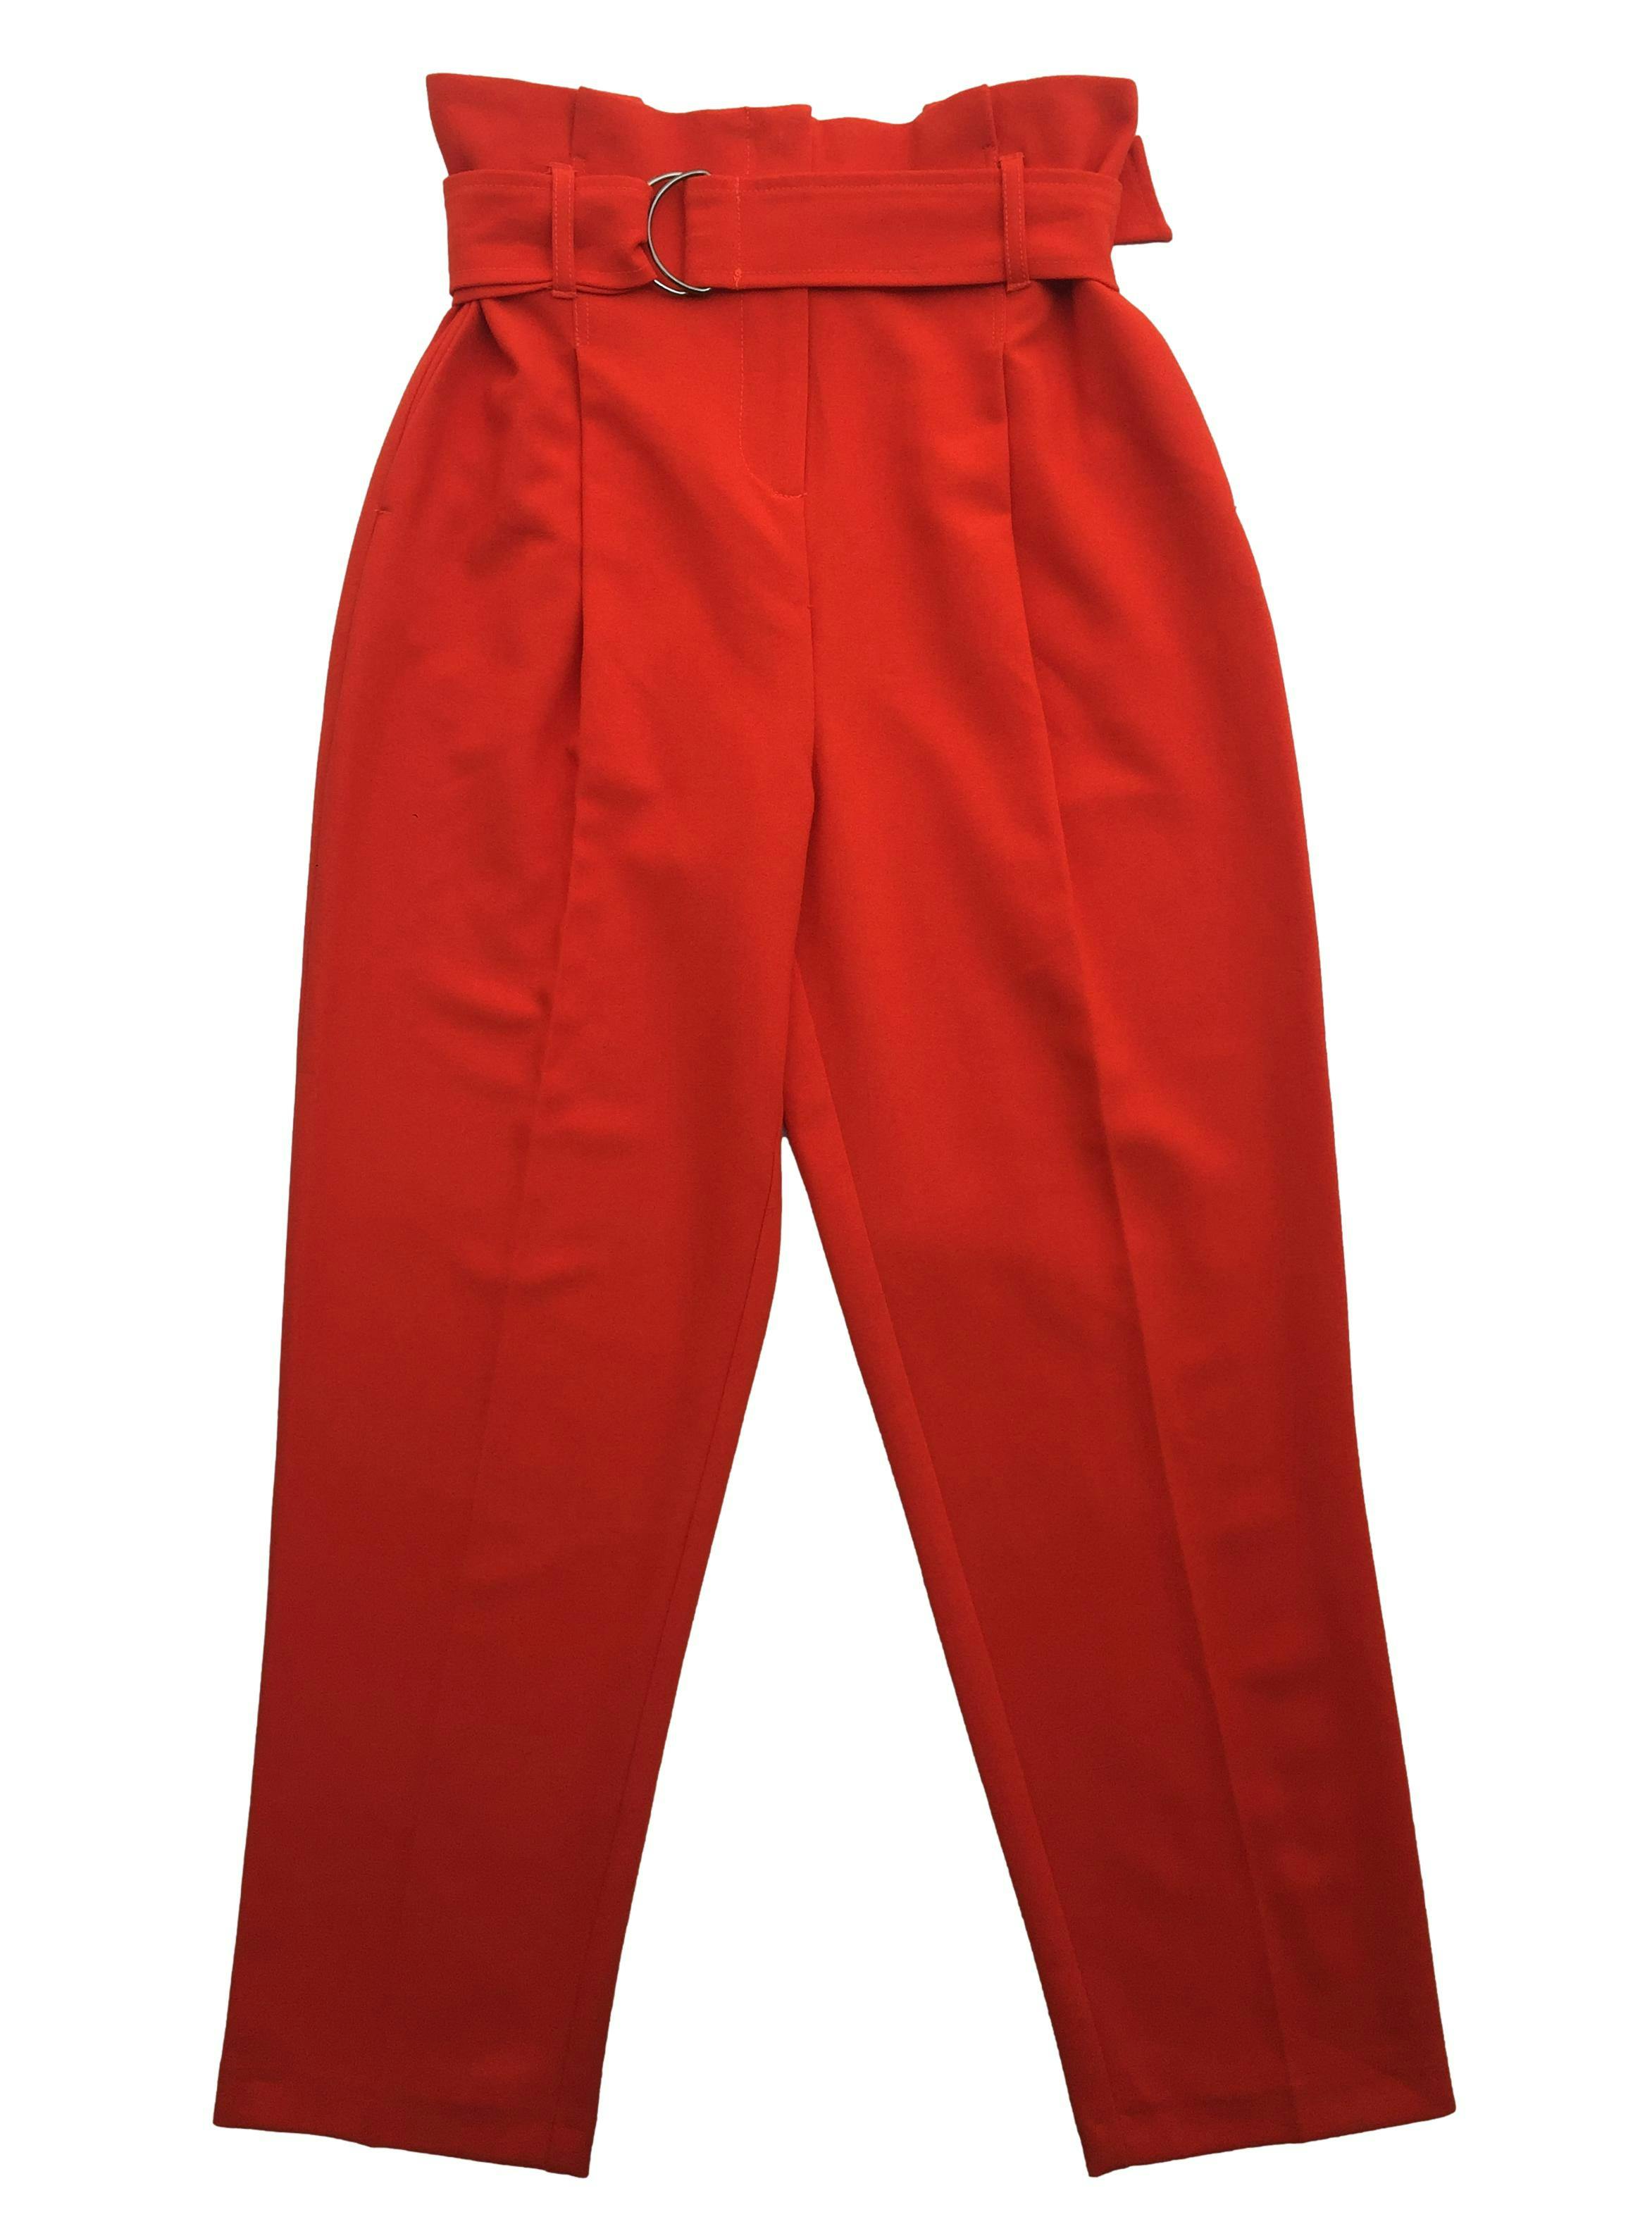 Pantalón Topshop naranja paper bag con cinturón, bolsillos laterales. Cintura 70cm Tiro 36cm Largo 95cm